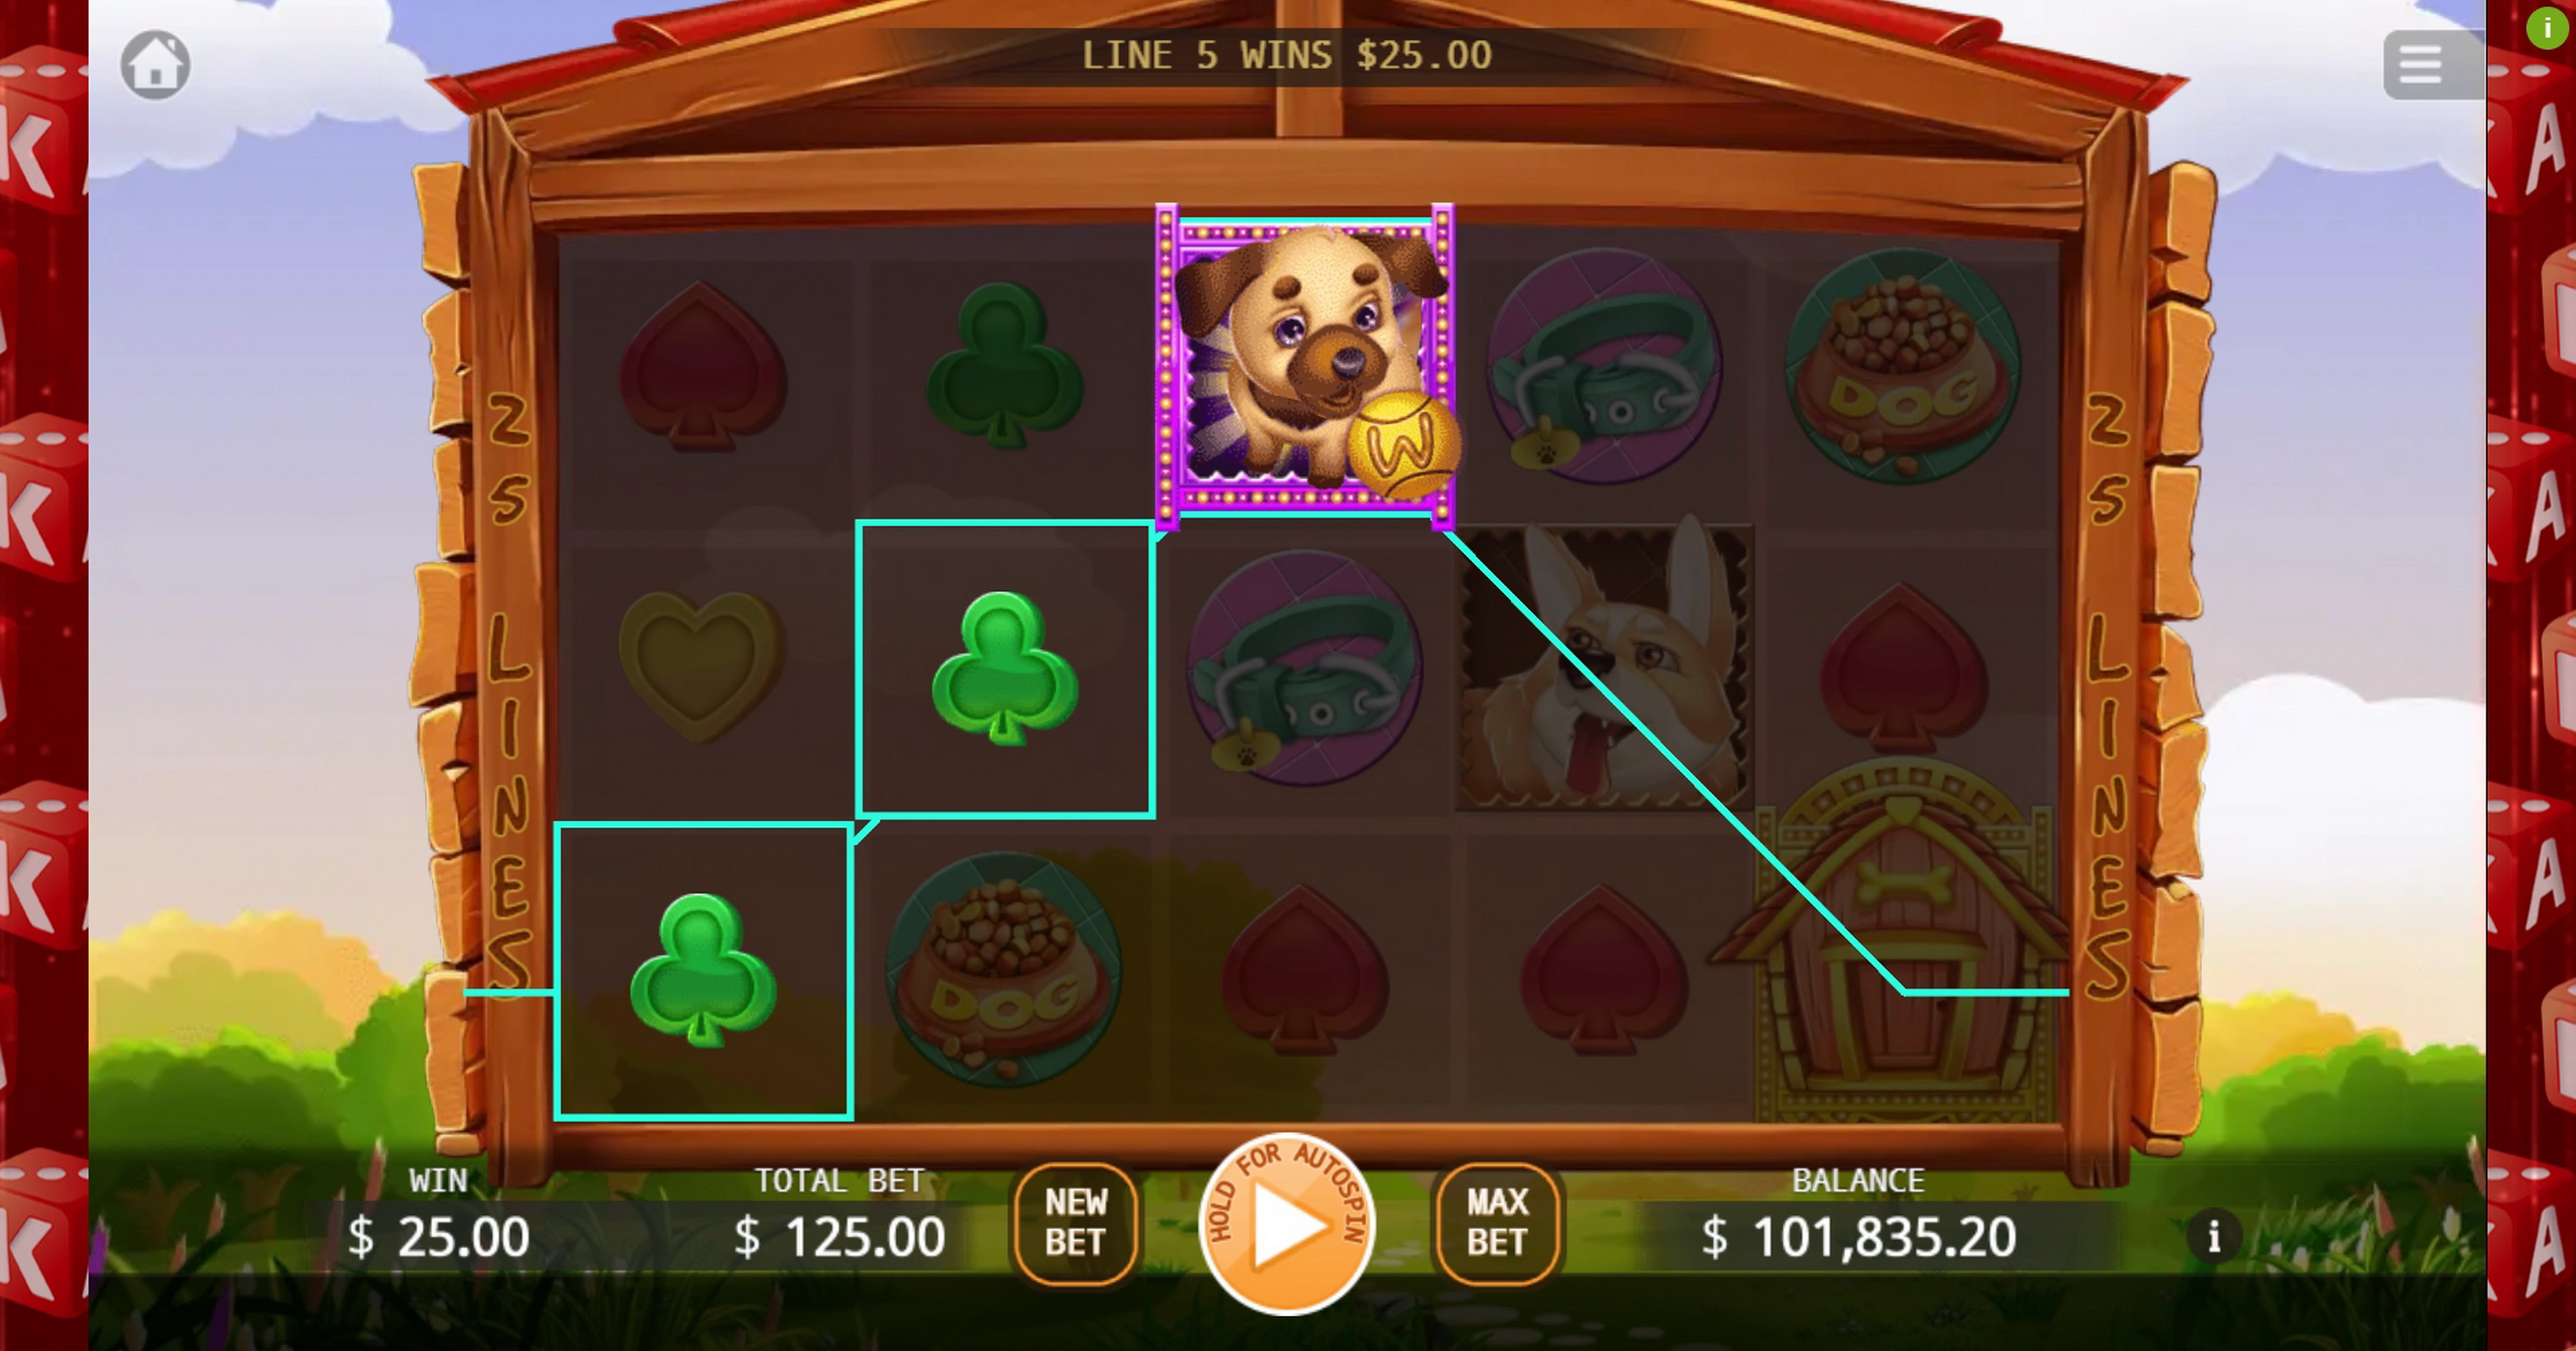 Win Money in Won Won Rich Free Slot Game by KA Gaming